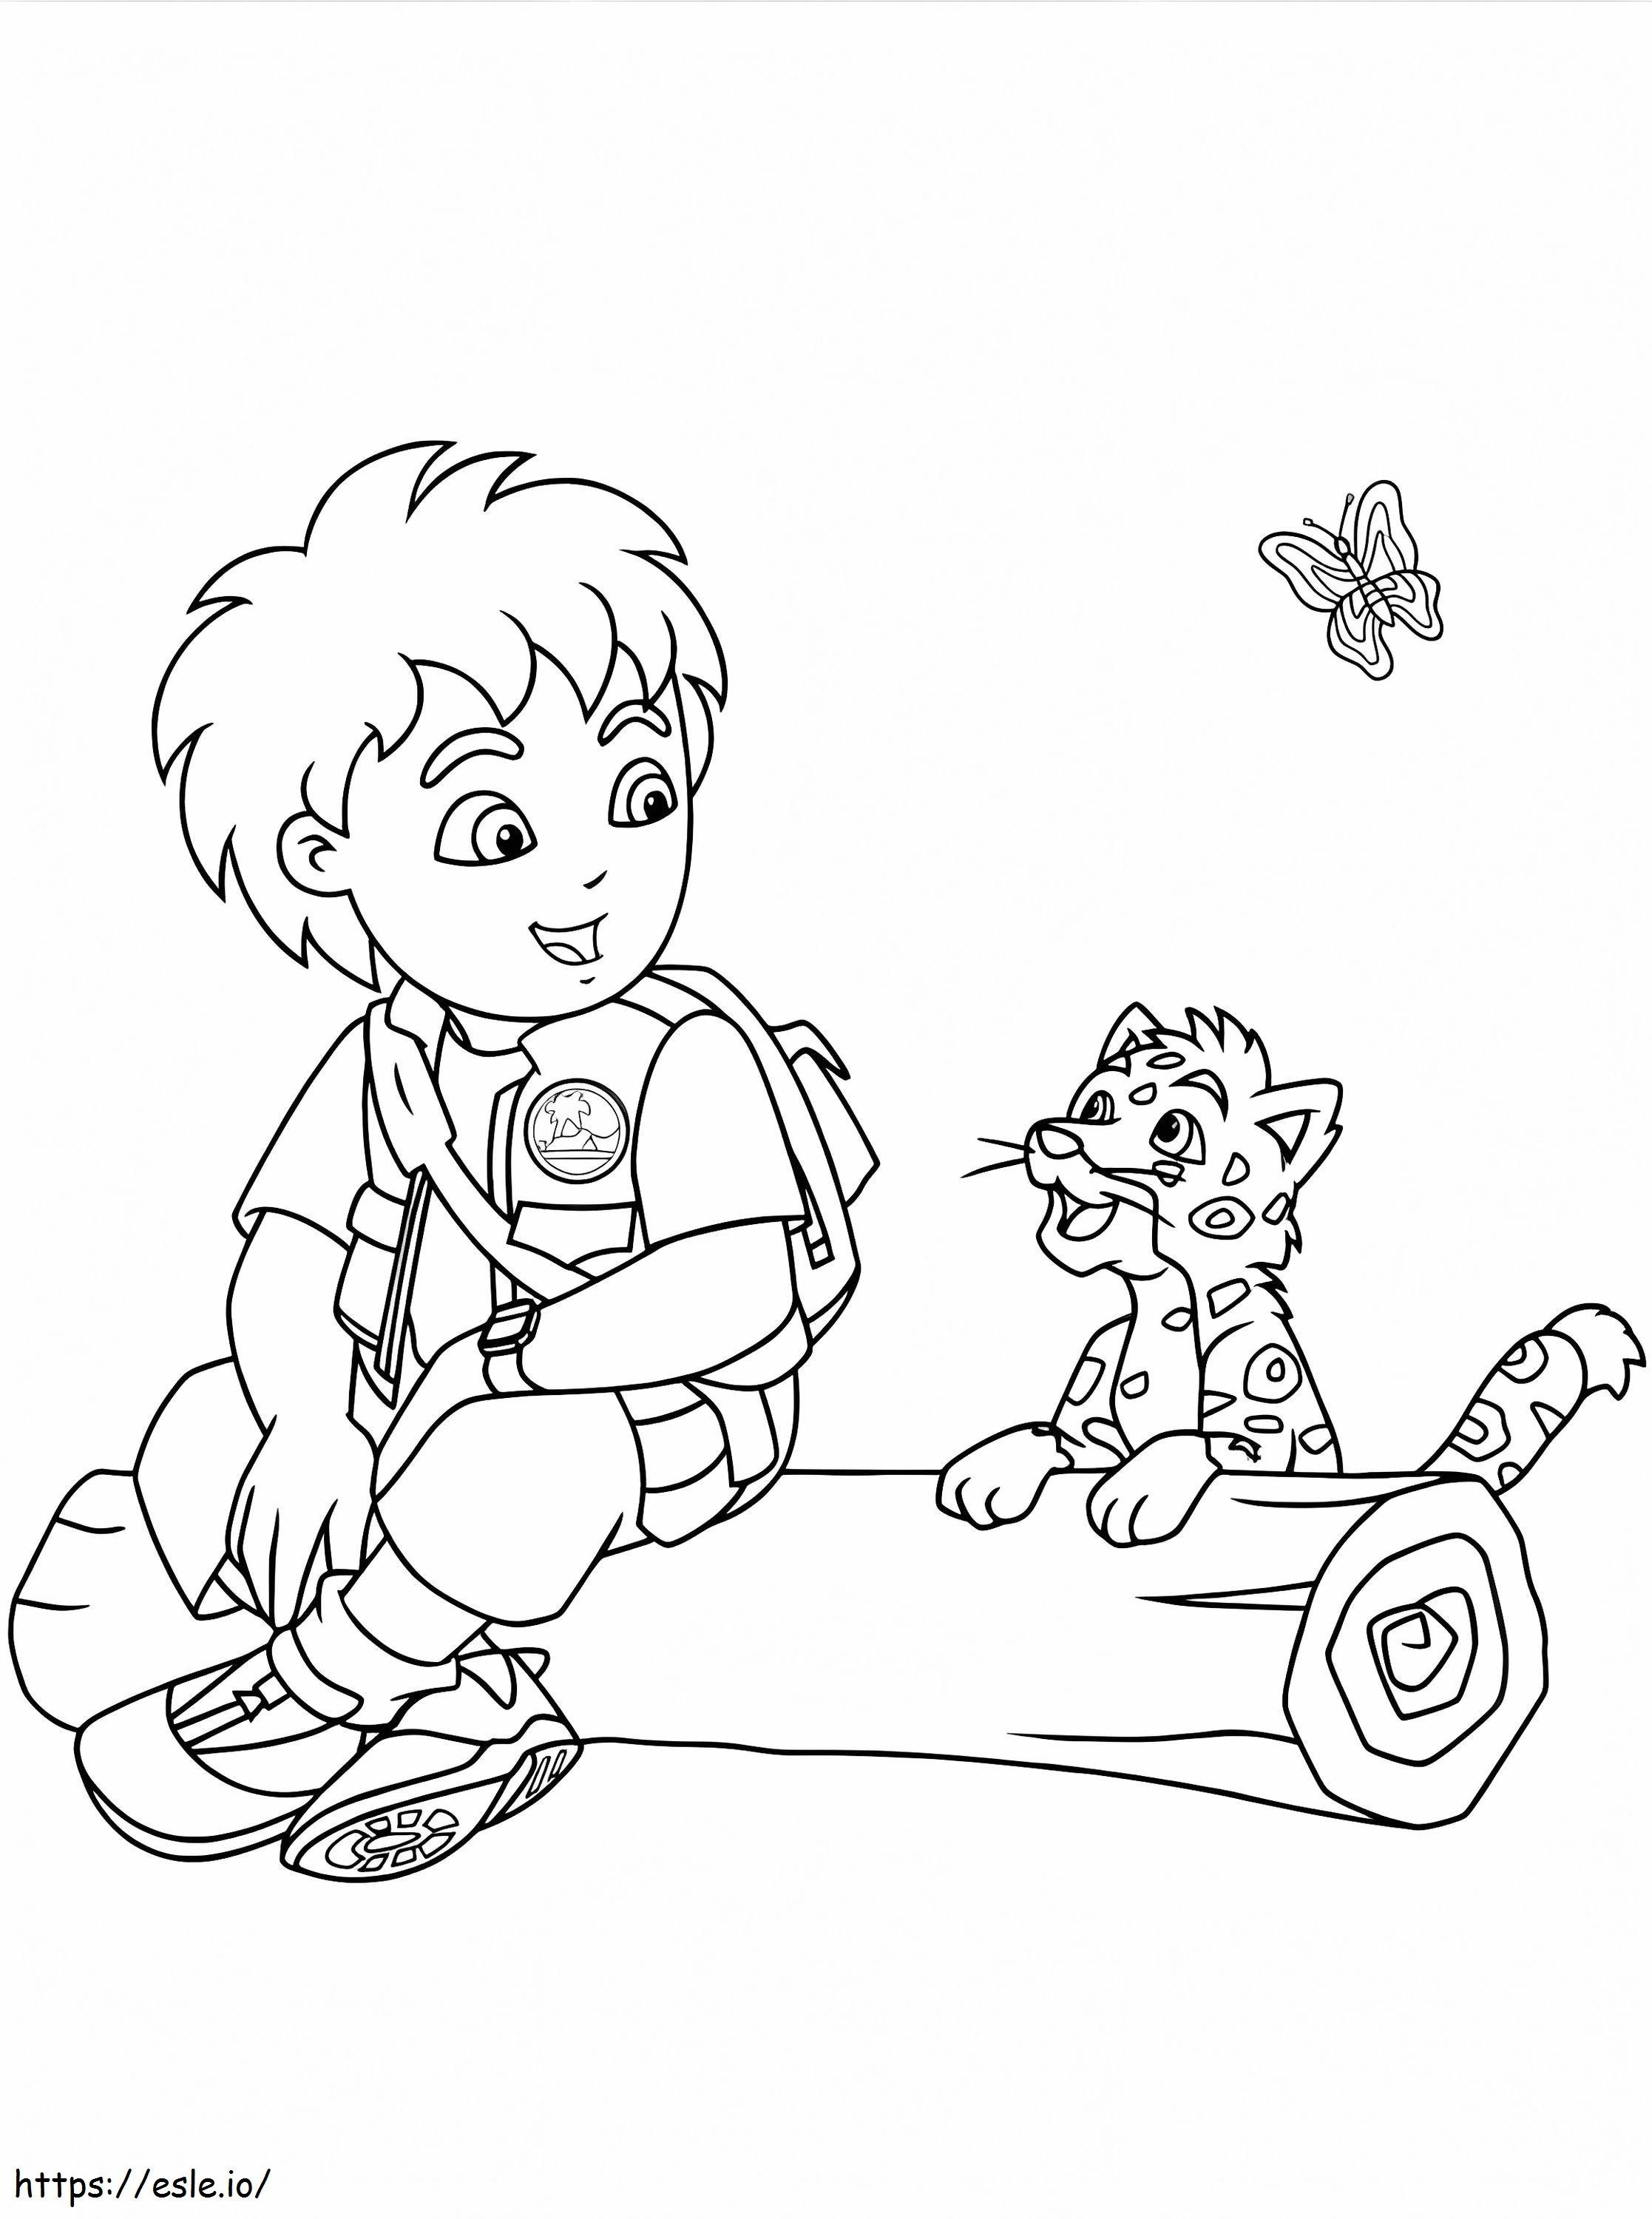 Coloriage Diego et bébé jaguar à imprimer dessin